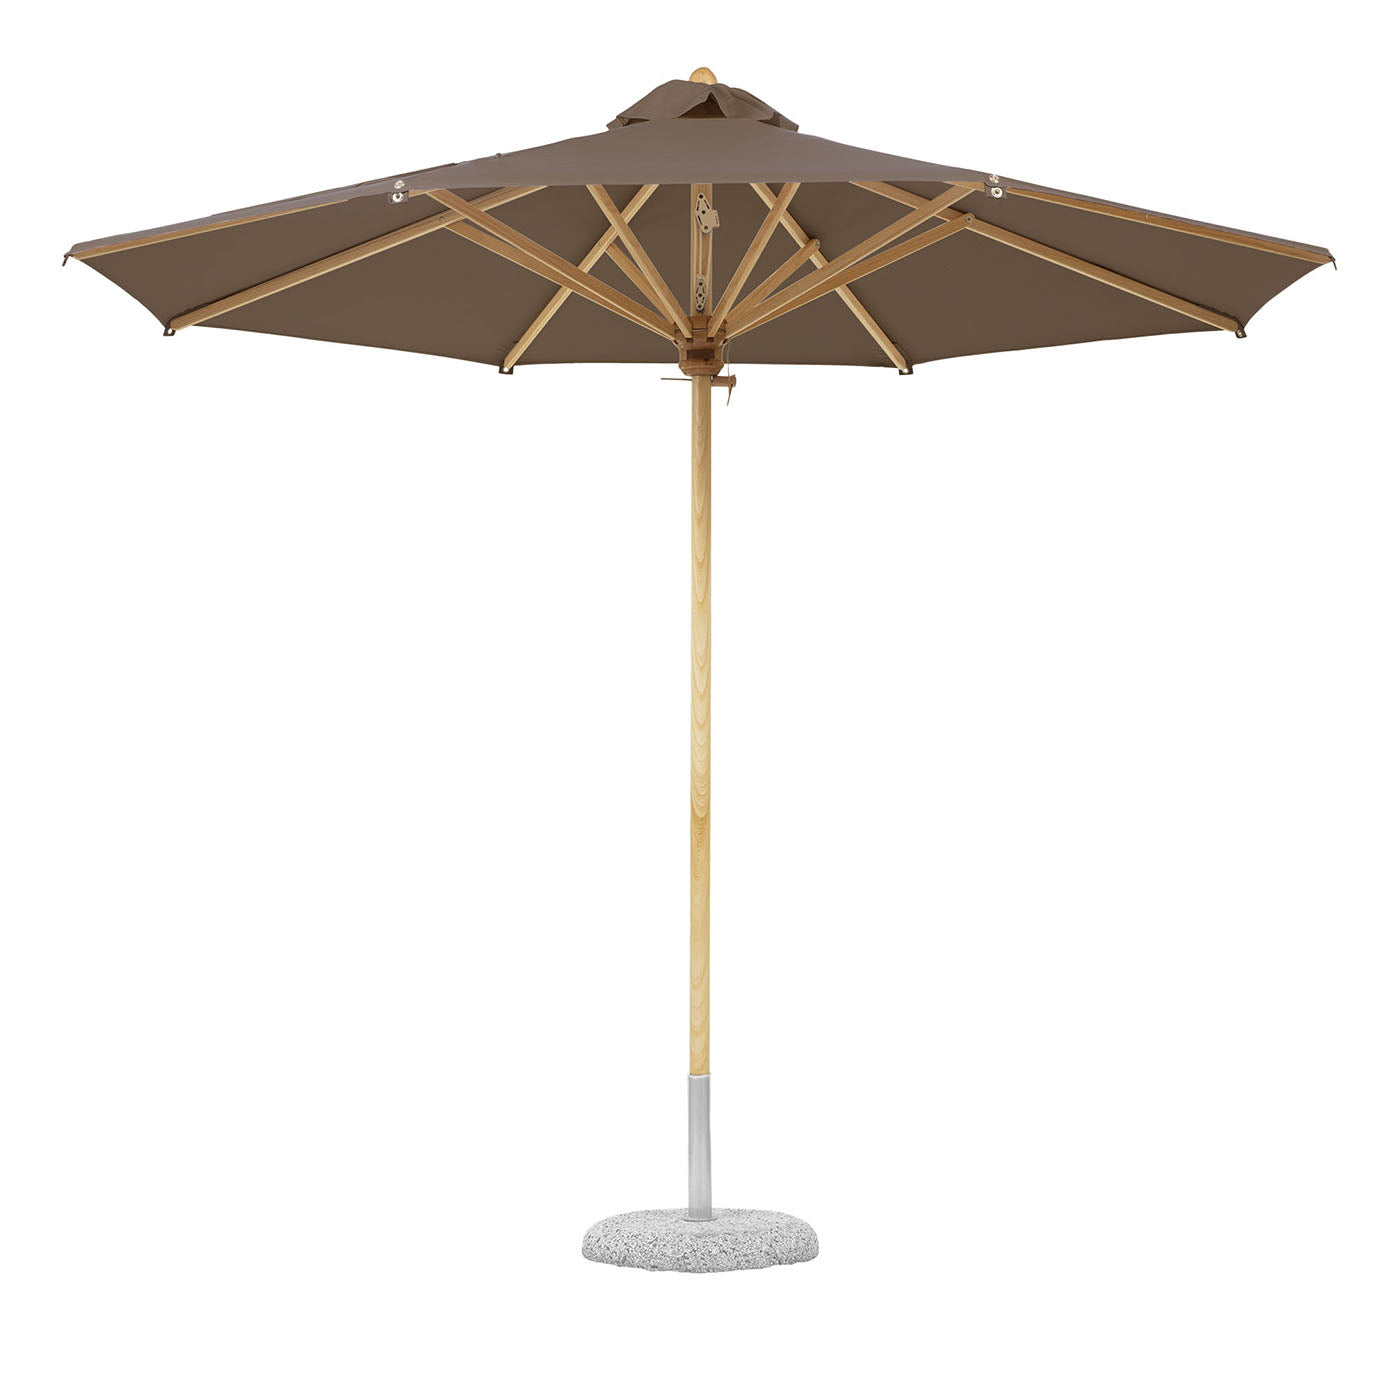 Taubengrauer runder Regenschirm für draußen - Hauptansicht